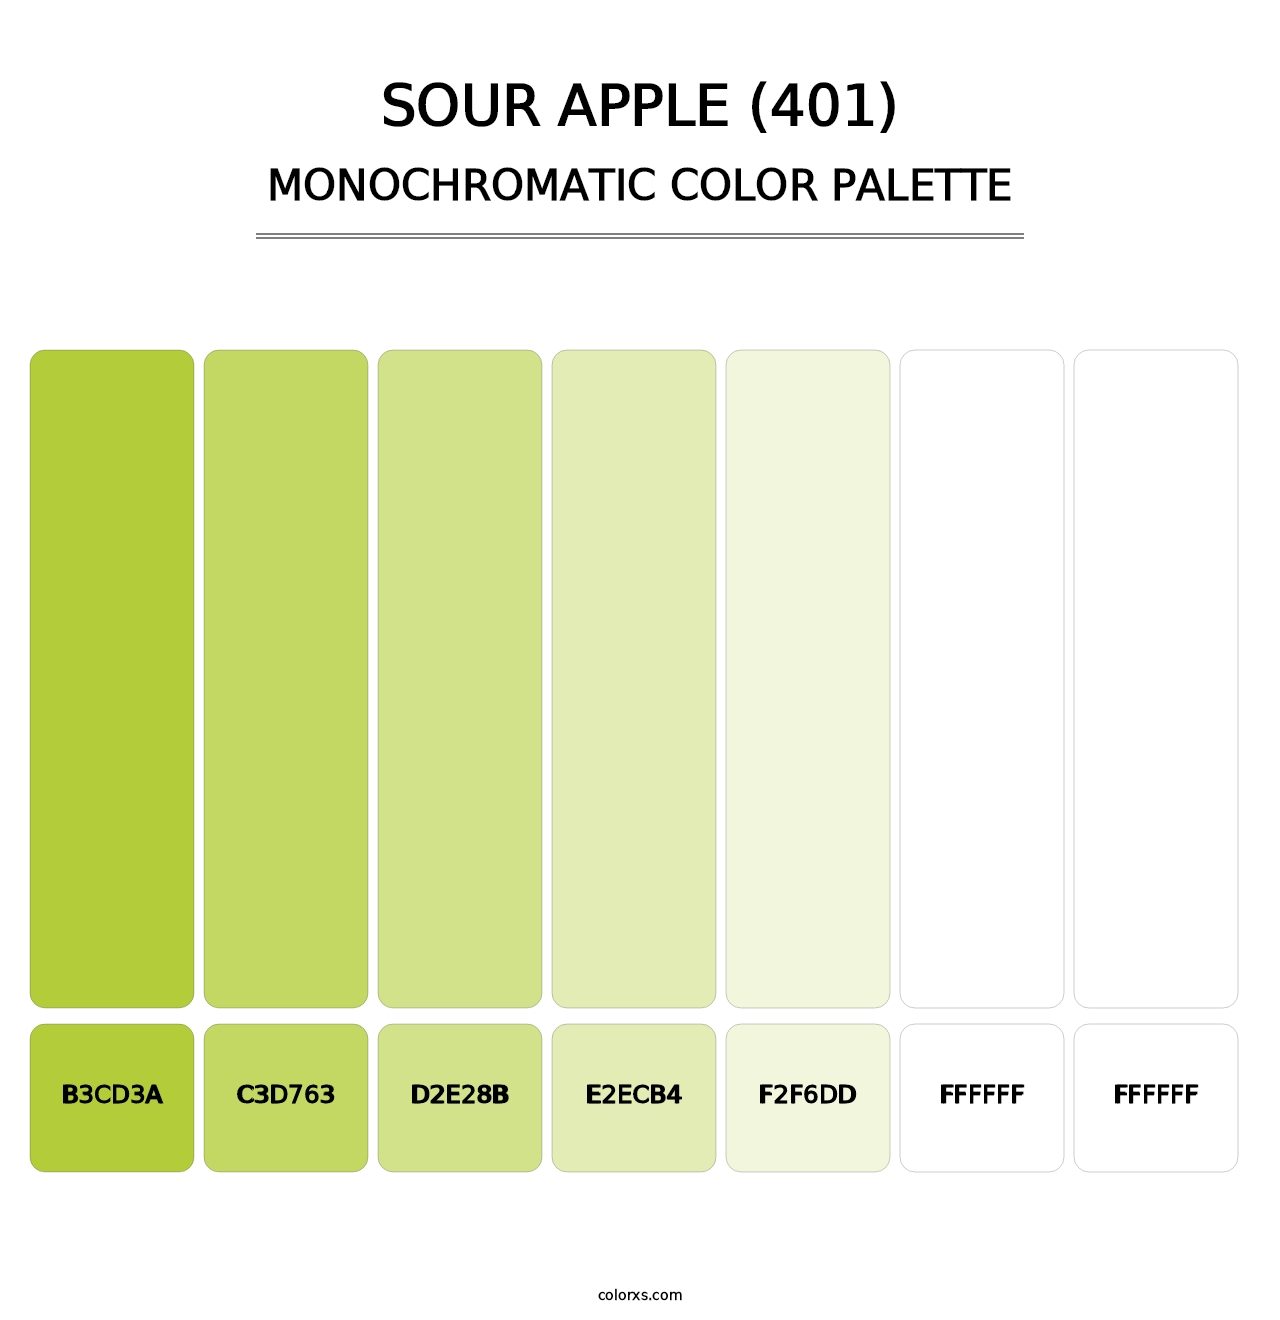 Sour Apple (401) - Monochromatic Color Palette